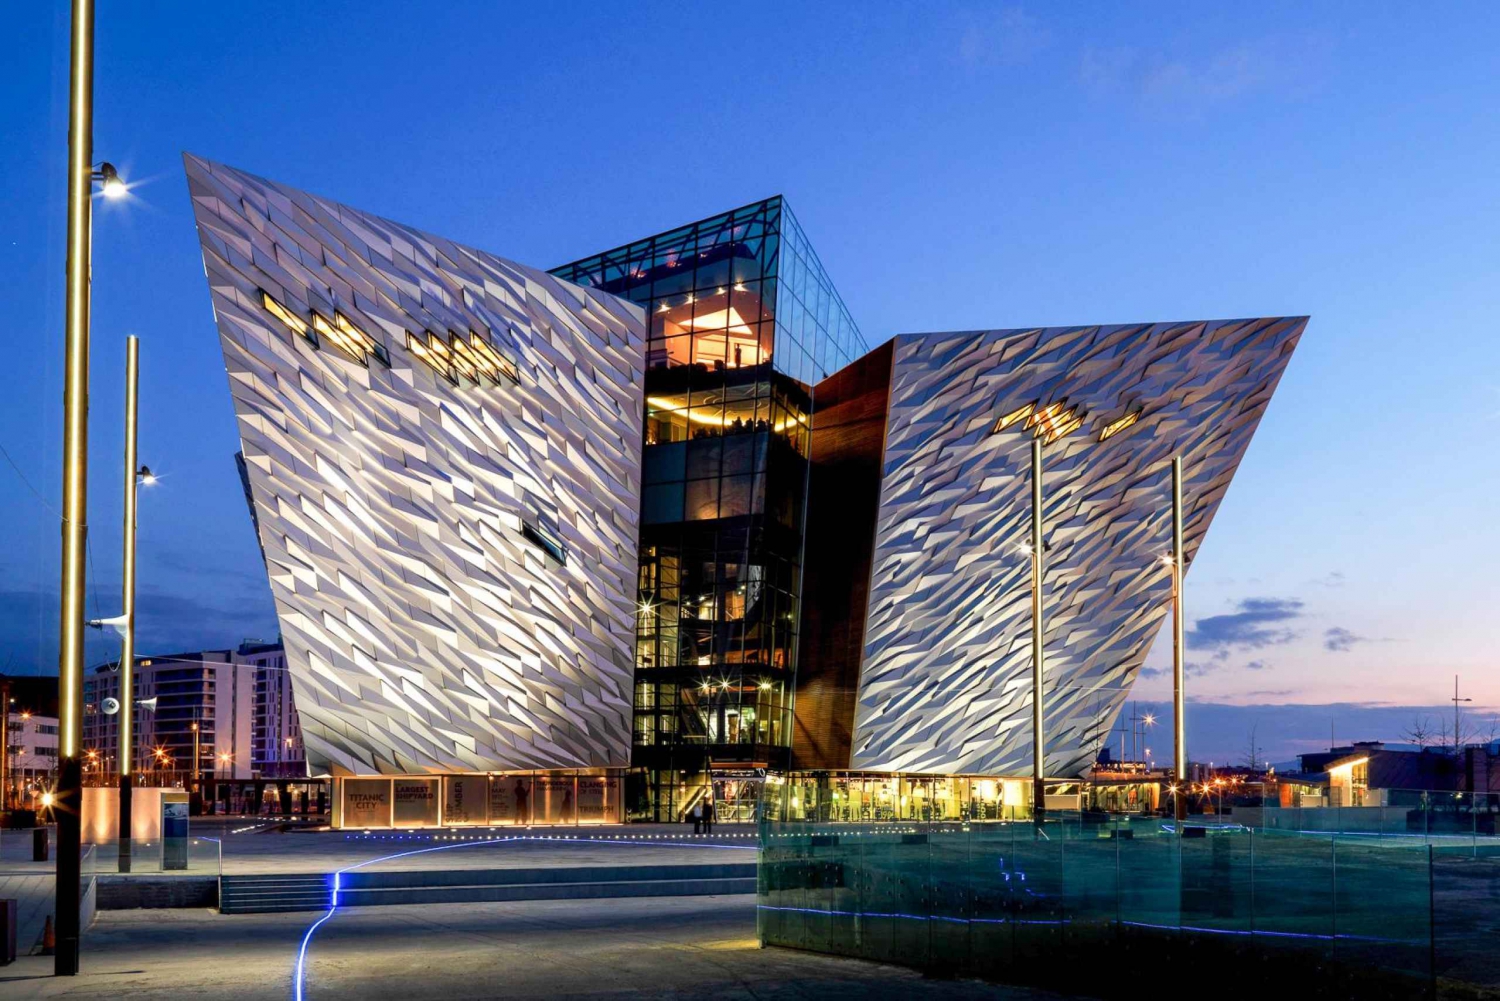 Z Dublina: Grobla Olbrzyma i Muzeum Titanica z biletem